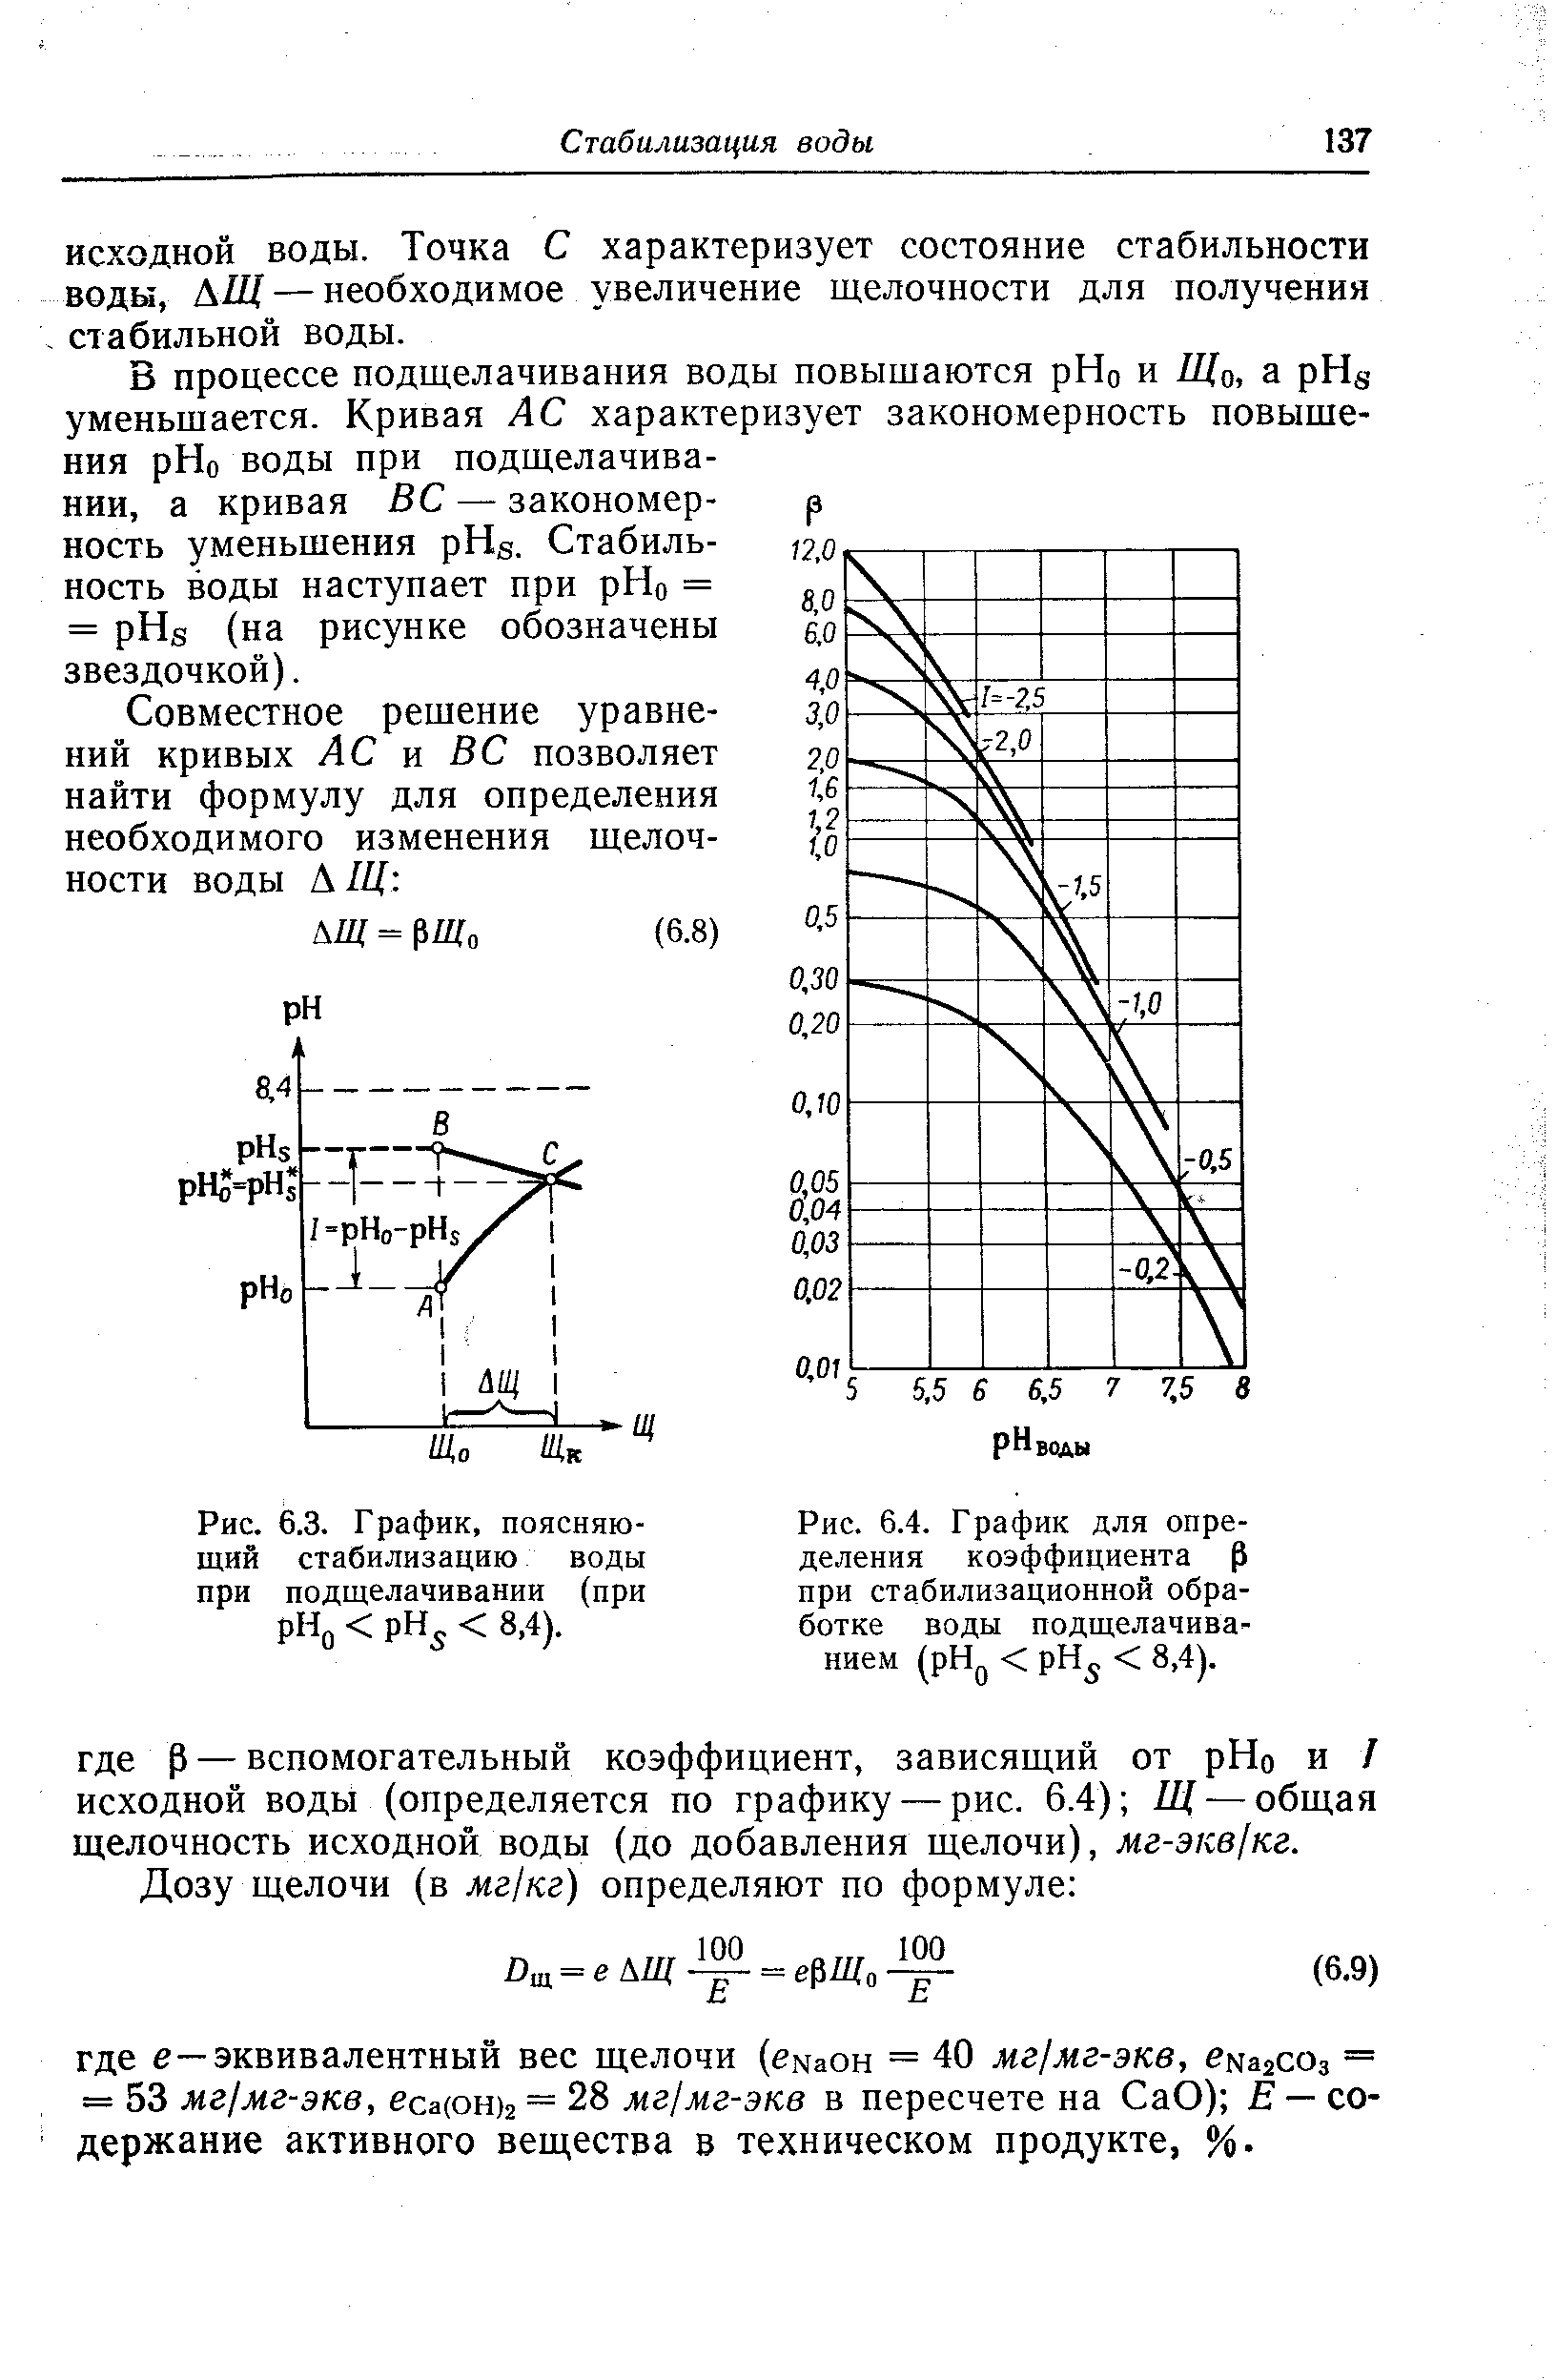 Рис. 6.3. Г рафик, поясняющий стабилизацию воды при подщелачивании (при рНц < рН < 8,4).
